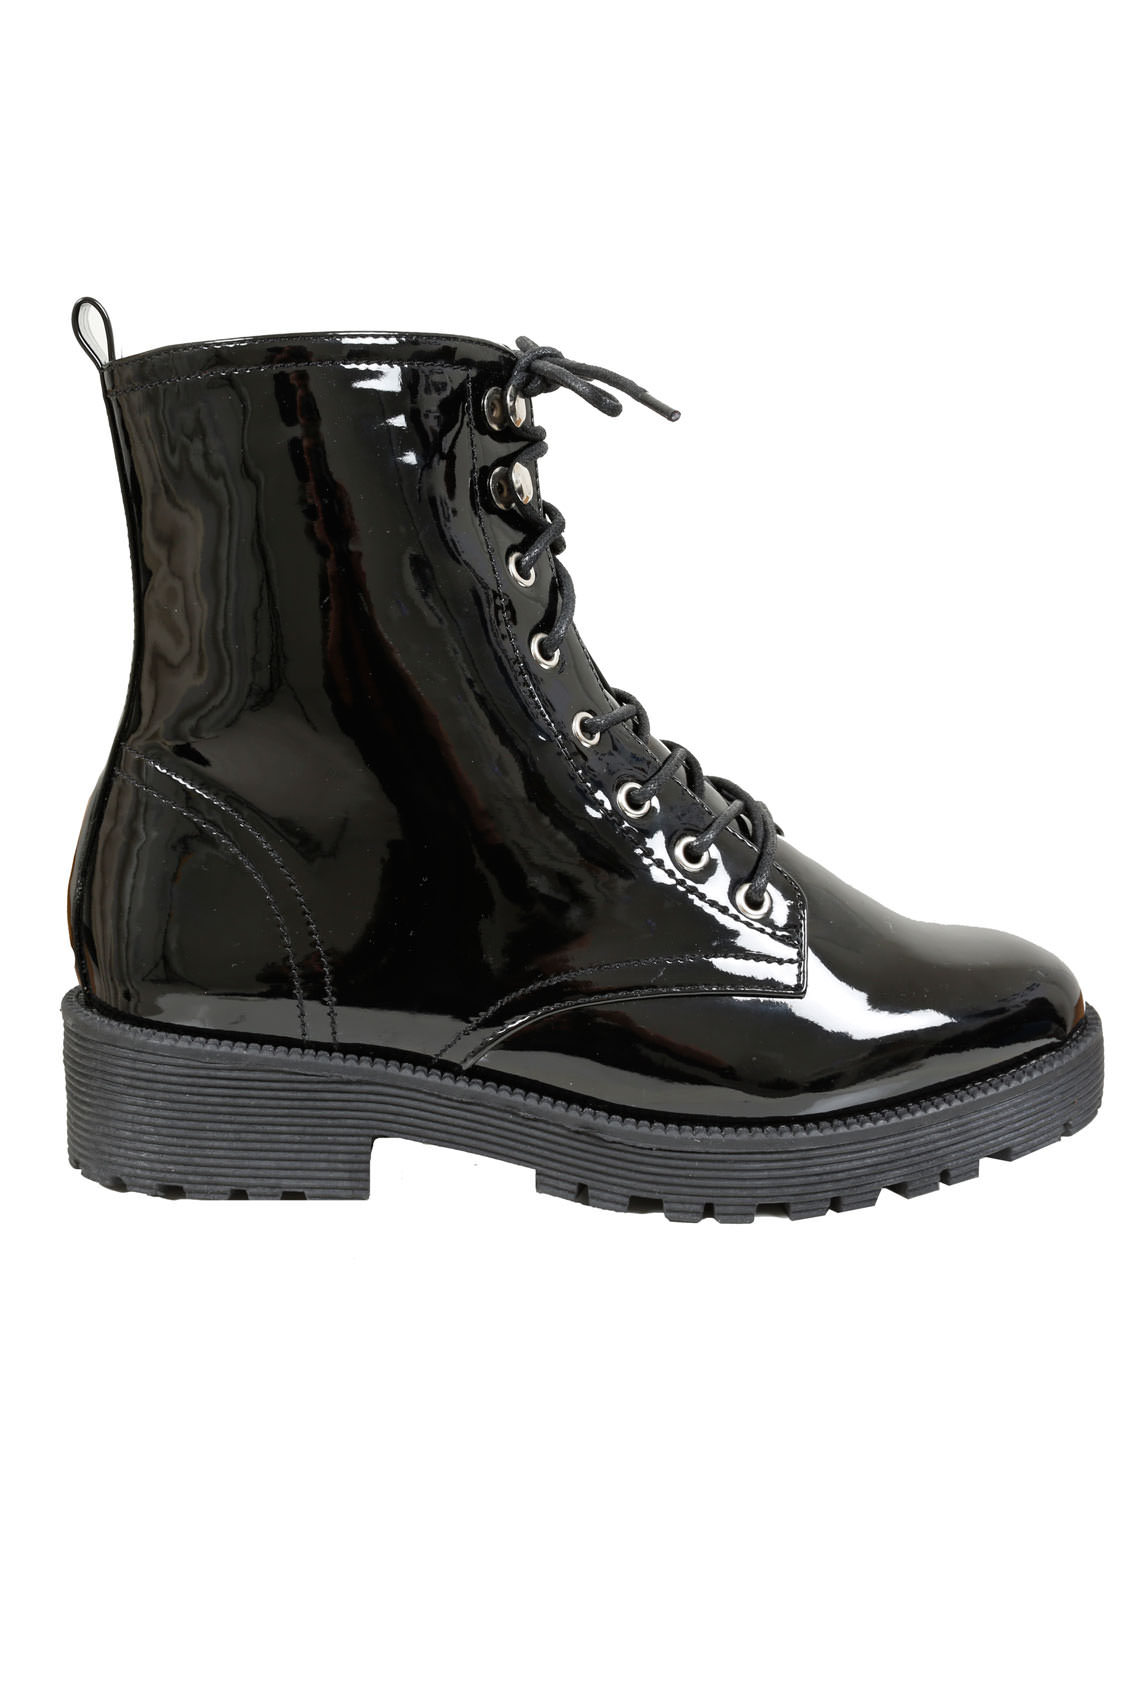 Black Patent Lace Up Boots In EEE Fit sizes 4EEE,5EEE,6EEE,7EEE,8EEE ...